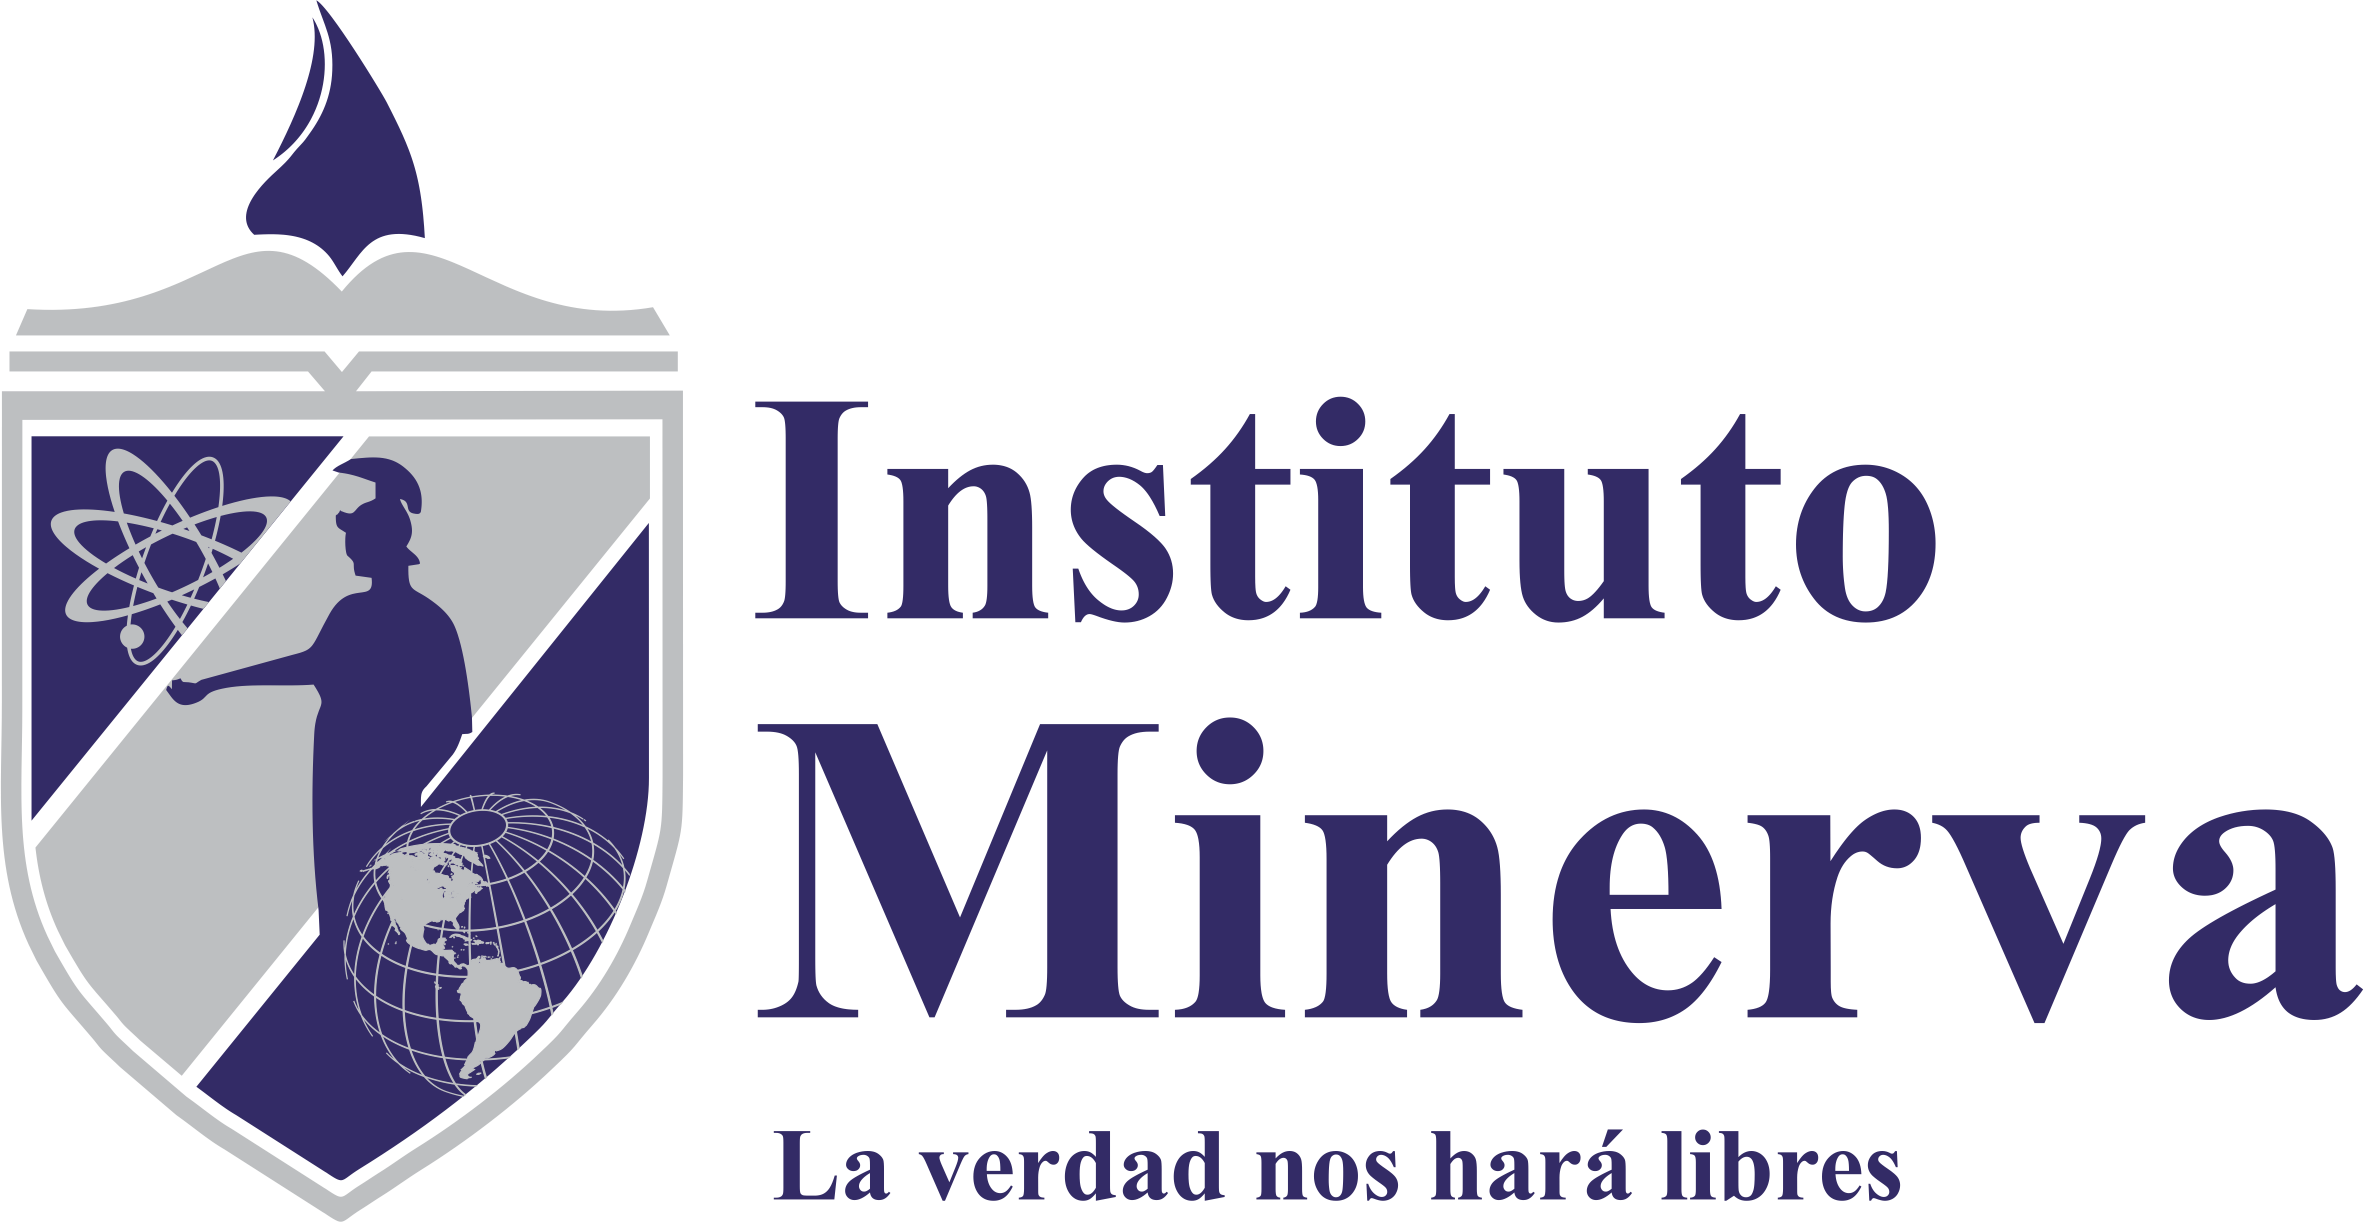 Instituto Minerva